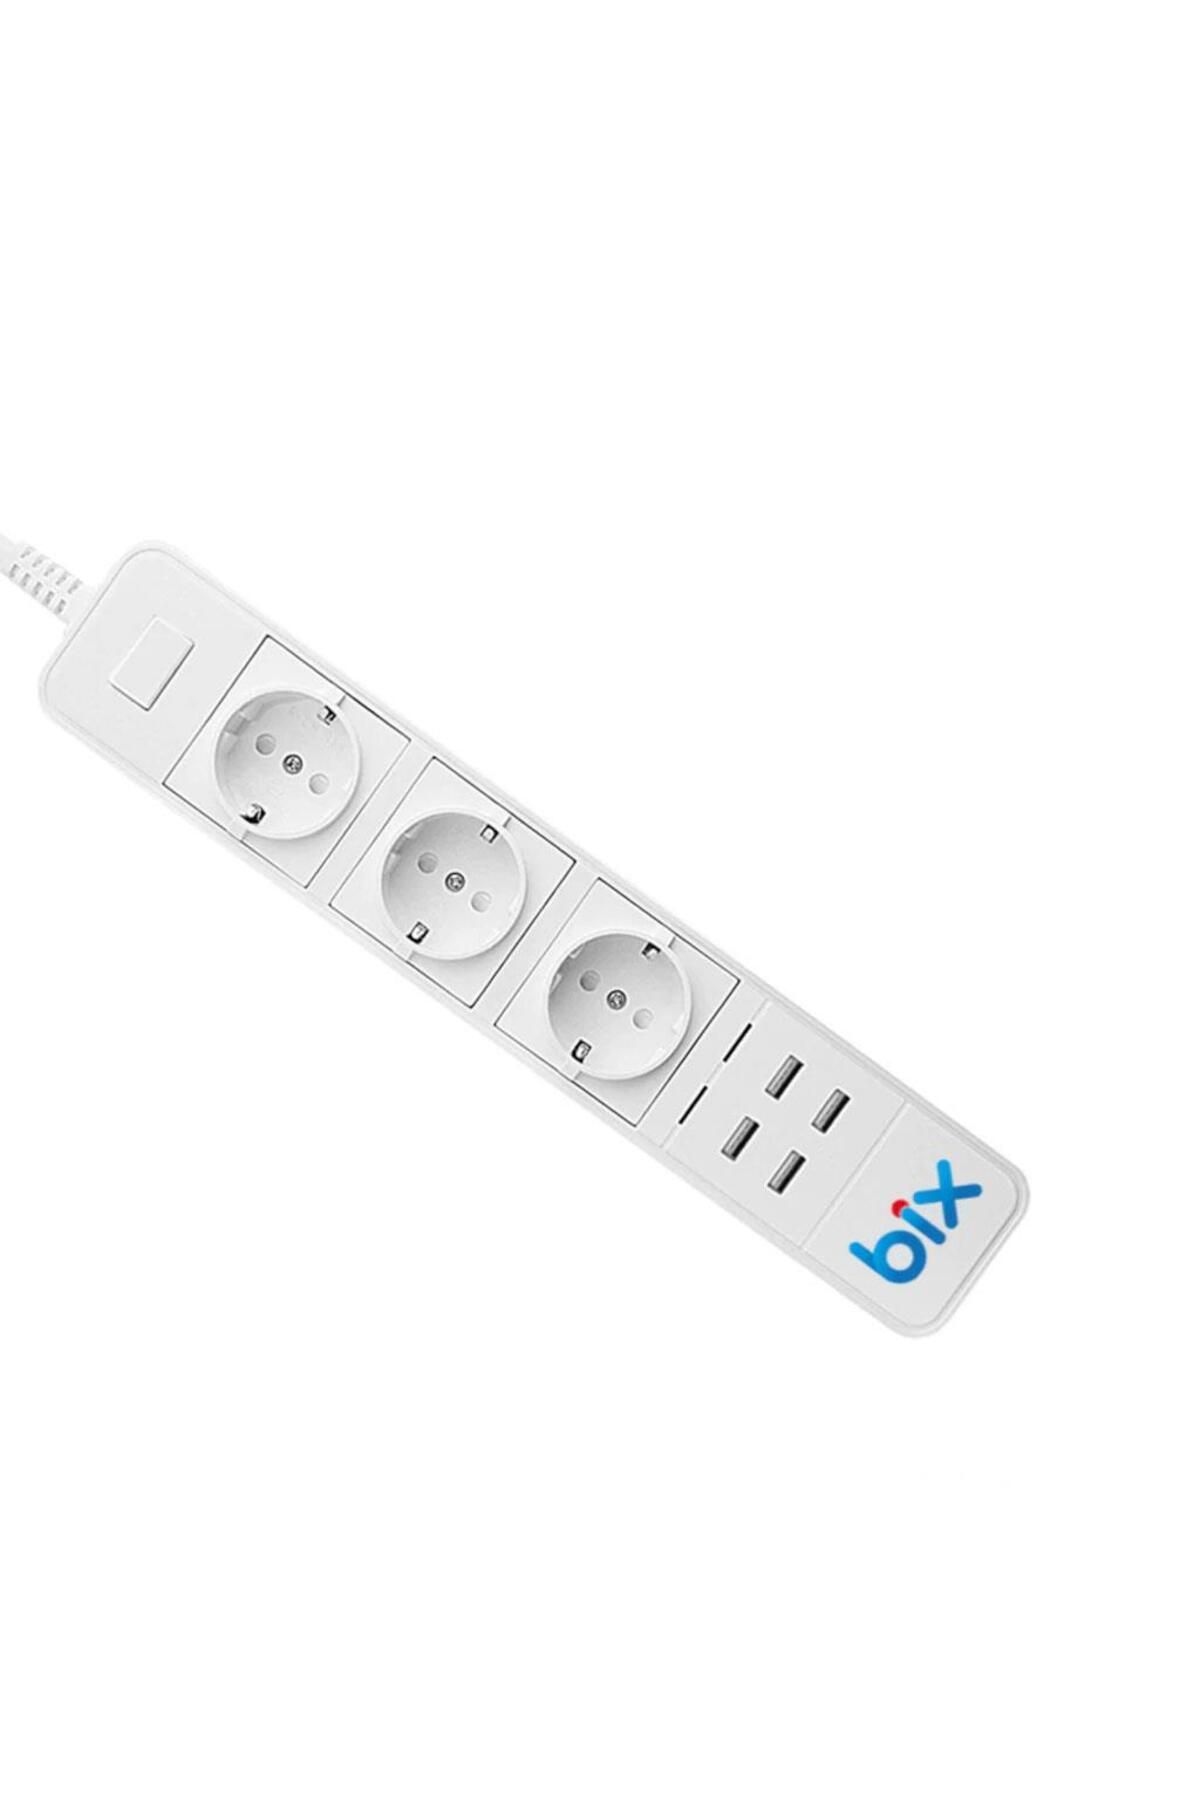 Bix Bp-01 Wifi Akım Korumalı Hızlı Şarj Özellikli Akıllı Priz